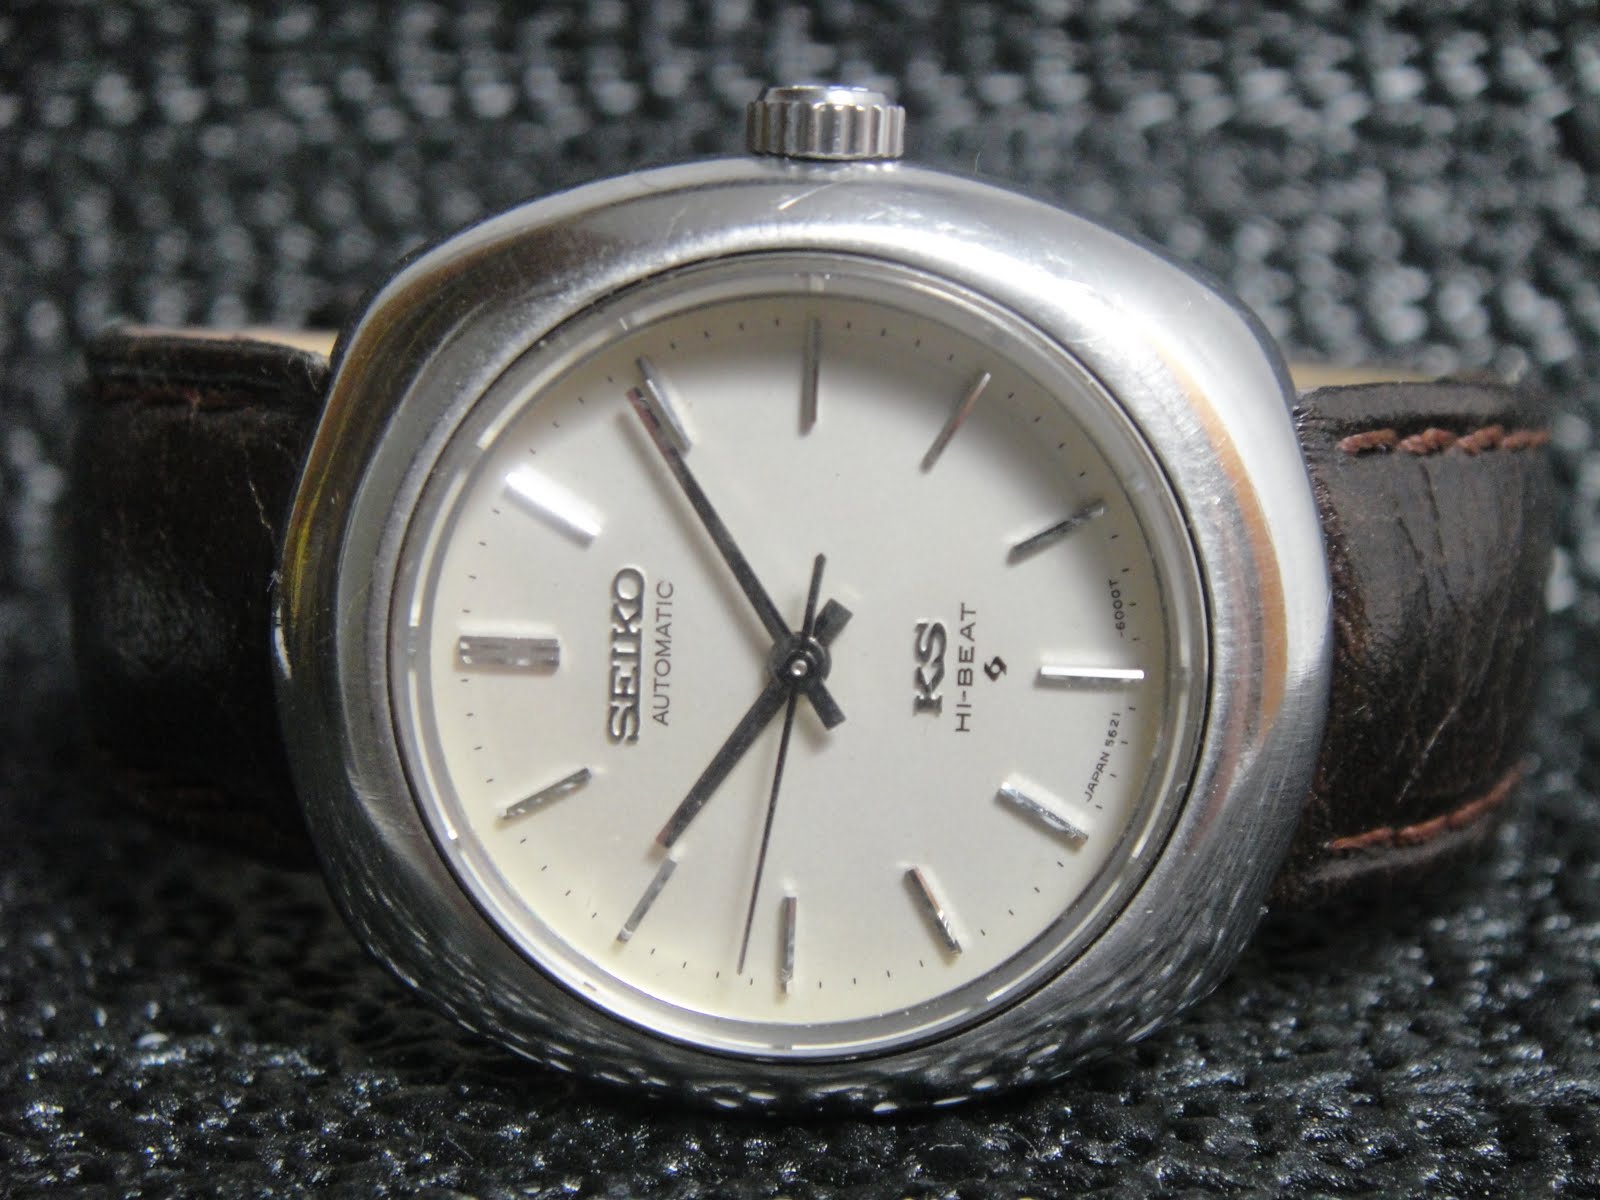 Antique Watch Bar: KING SEIKO HI-BEAT 5621-6000 KS01 (SOLD)